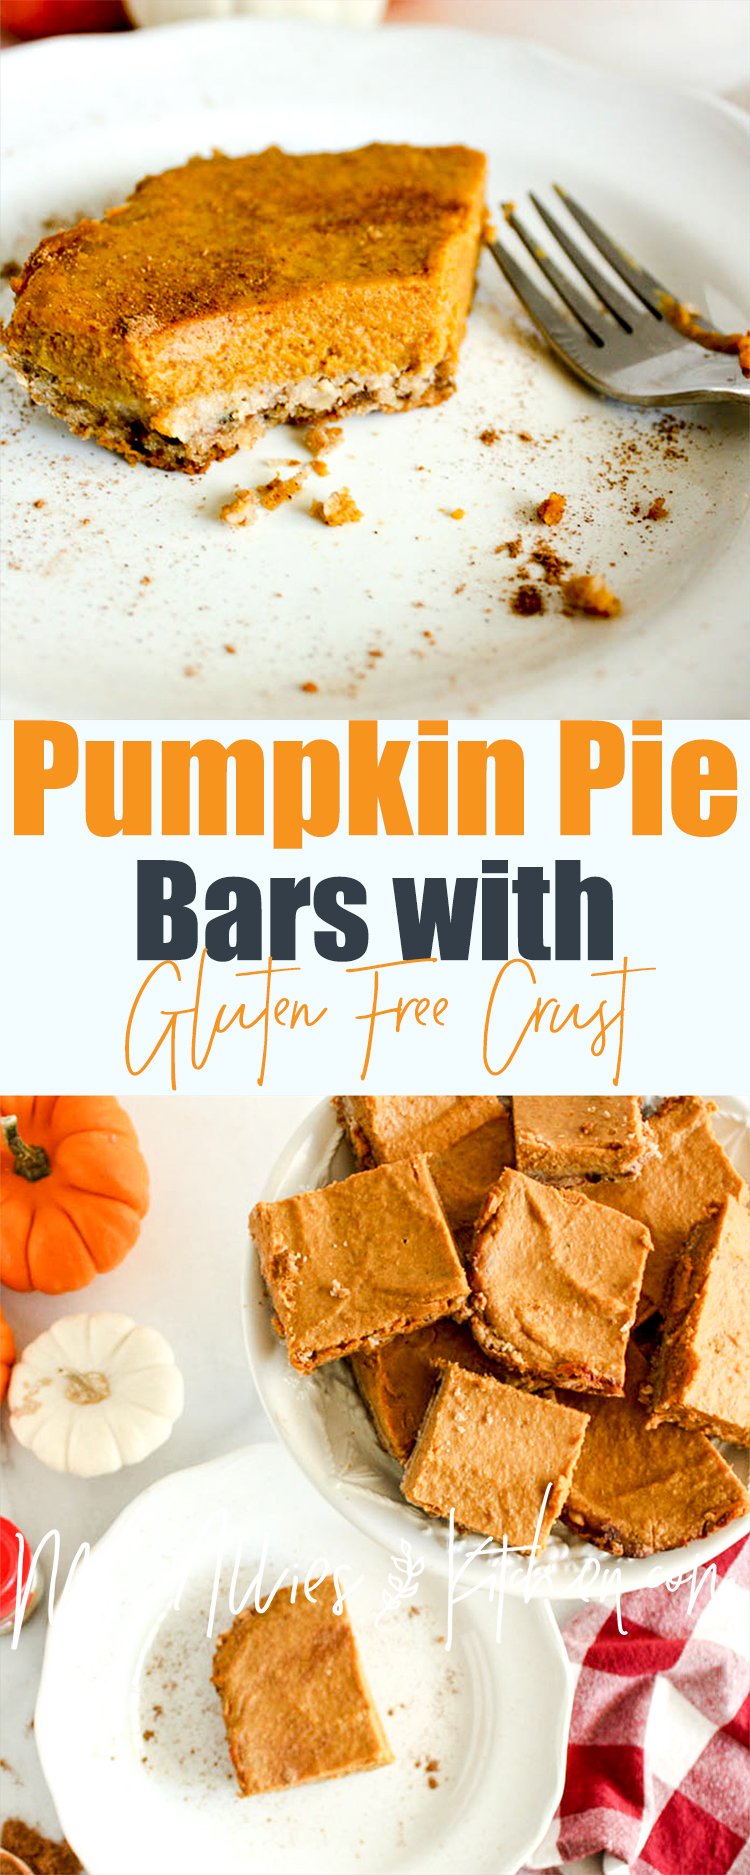 Pumpkin Pie Bars with Gluten Free Oat Crust. Get the healthier pumpkin pie alternative! 